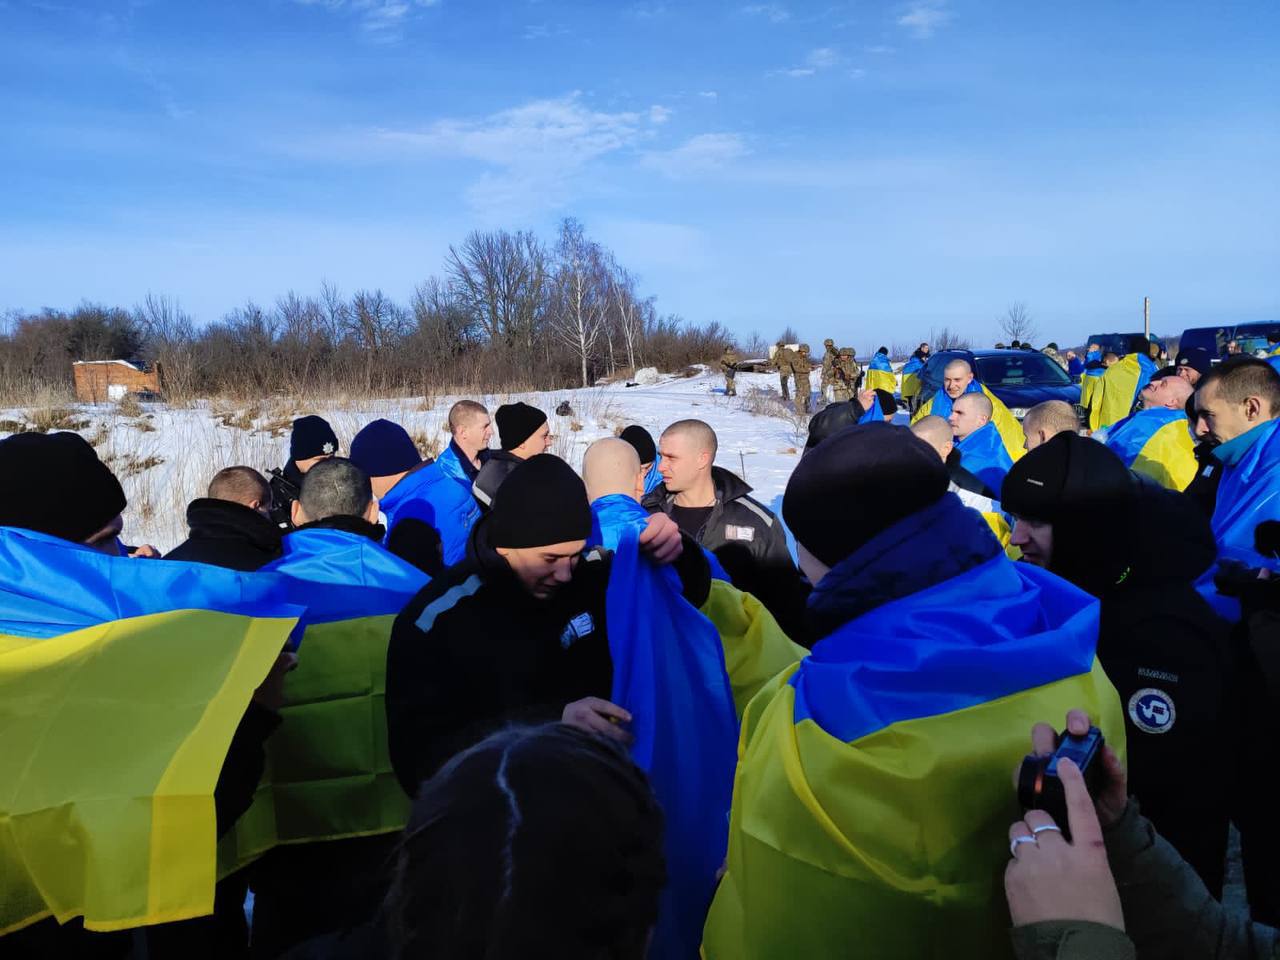 Украина вернула из вражеского плена еще более 200 человек - среди них есть защитник с острова Змеиный, житель Вилкового